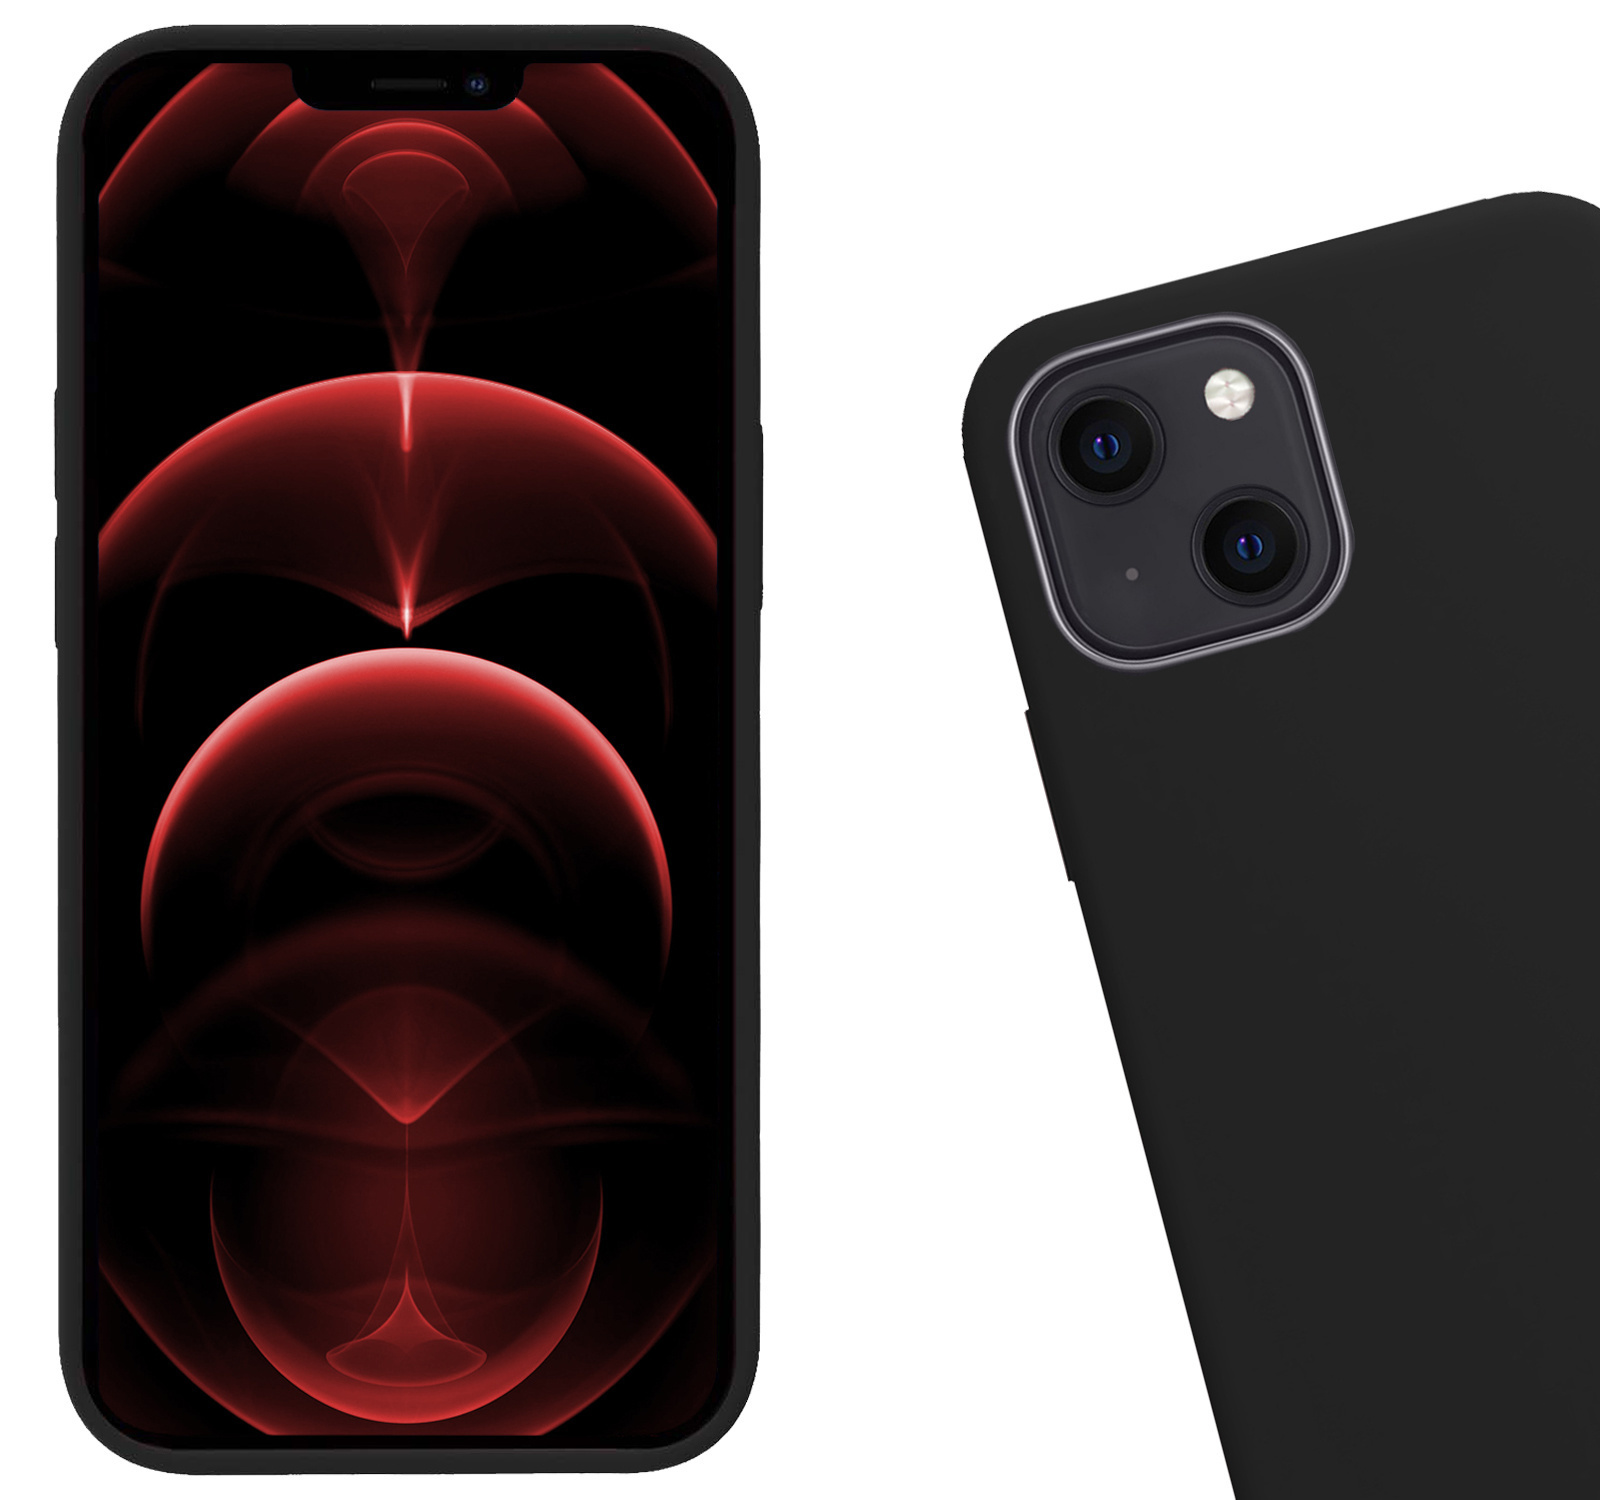 Hoes voor iPhone 14 Plus Hoesje Siliconen Case Back Cover - Hoes voor iPhone 14 Plus Hoes Cover Silicone - Zwart - 2X